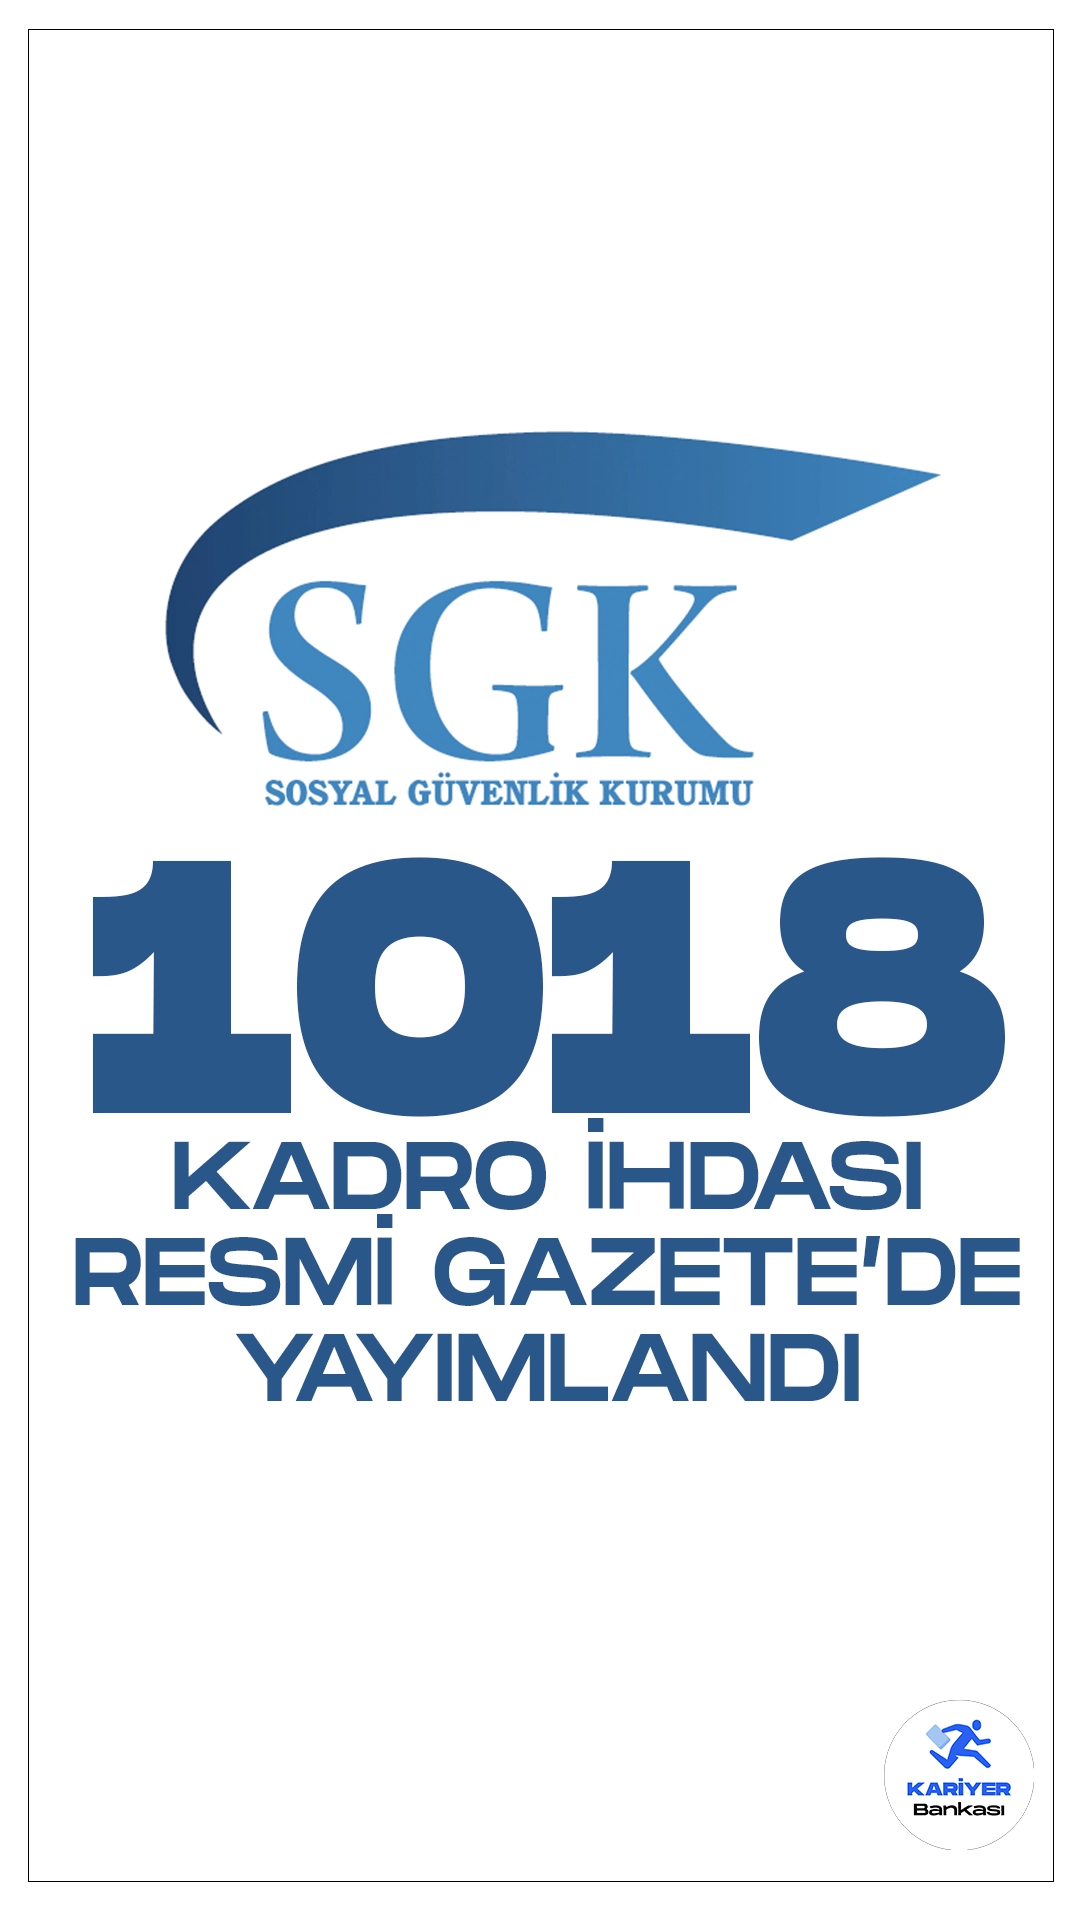 SGK 1018 Kadro İhdası Resmi Gazete'de Yayımlandı. 27 Mart 2024 tarihli Resmi Gazete’de yayımlanan duyuruda, Cumhurbaşkanı Recep Tayyip Erdoğan’ın imzasıyla Sosyal Güvenlik Kurumuna  1018 boş kadro ihdası gerçekleştirildi.